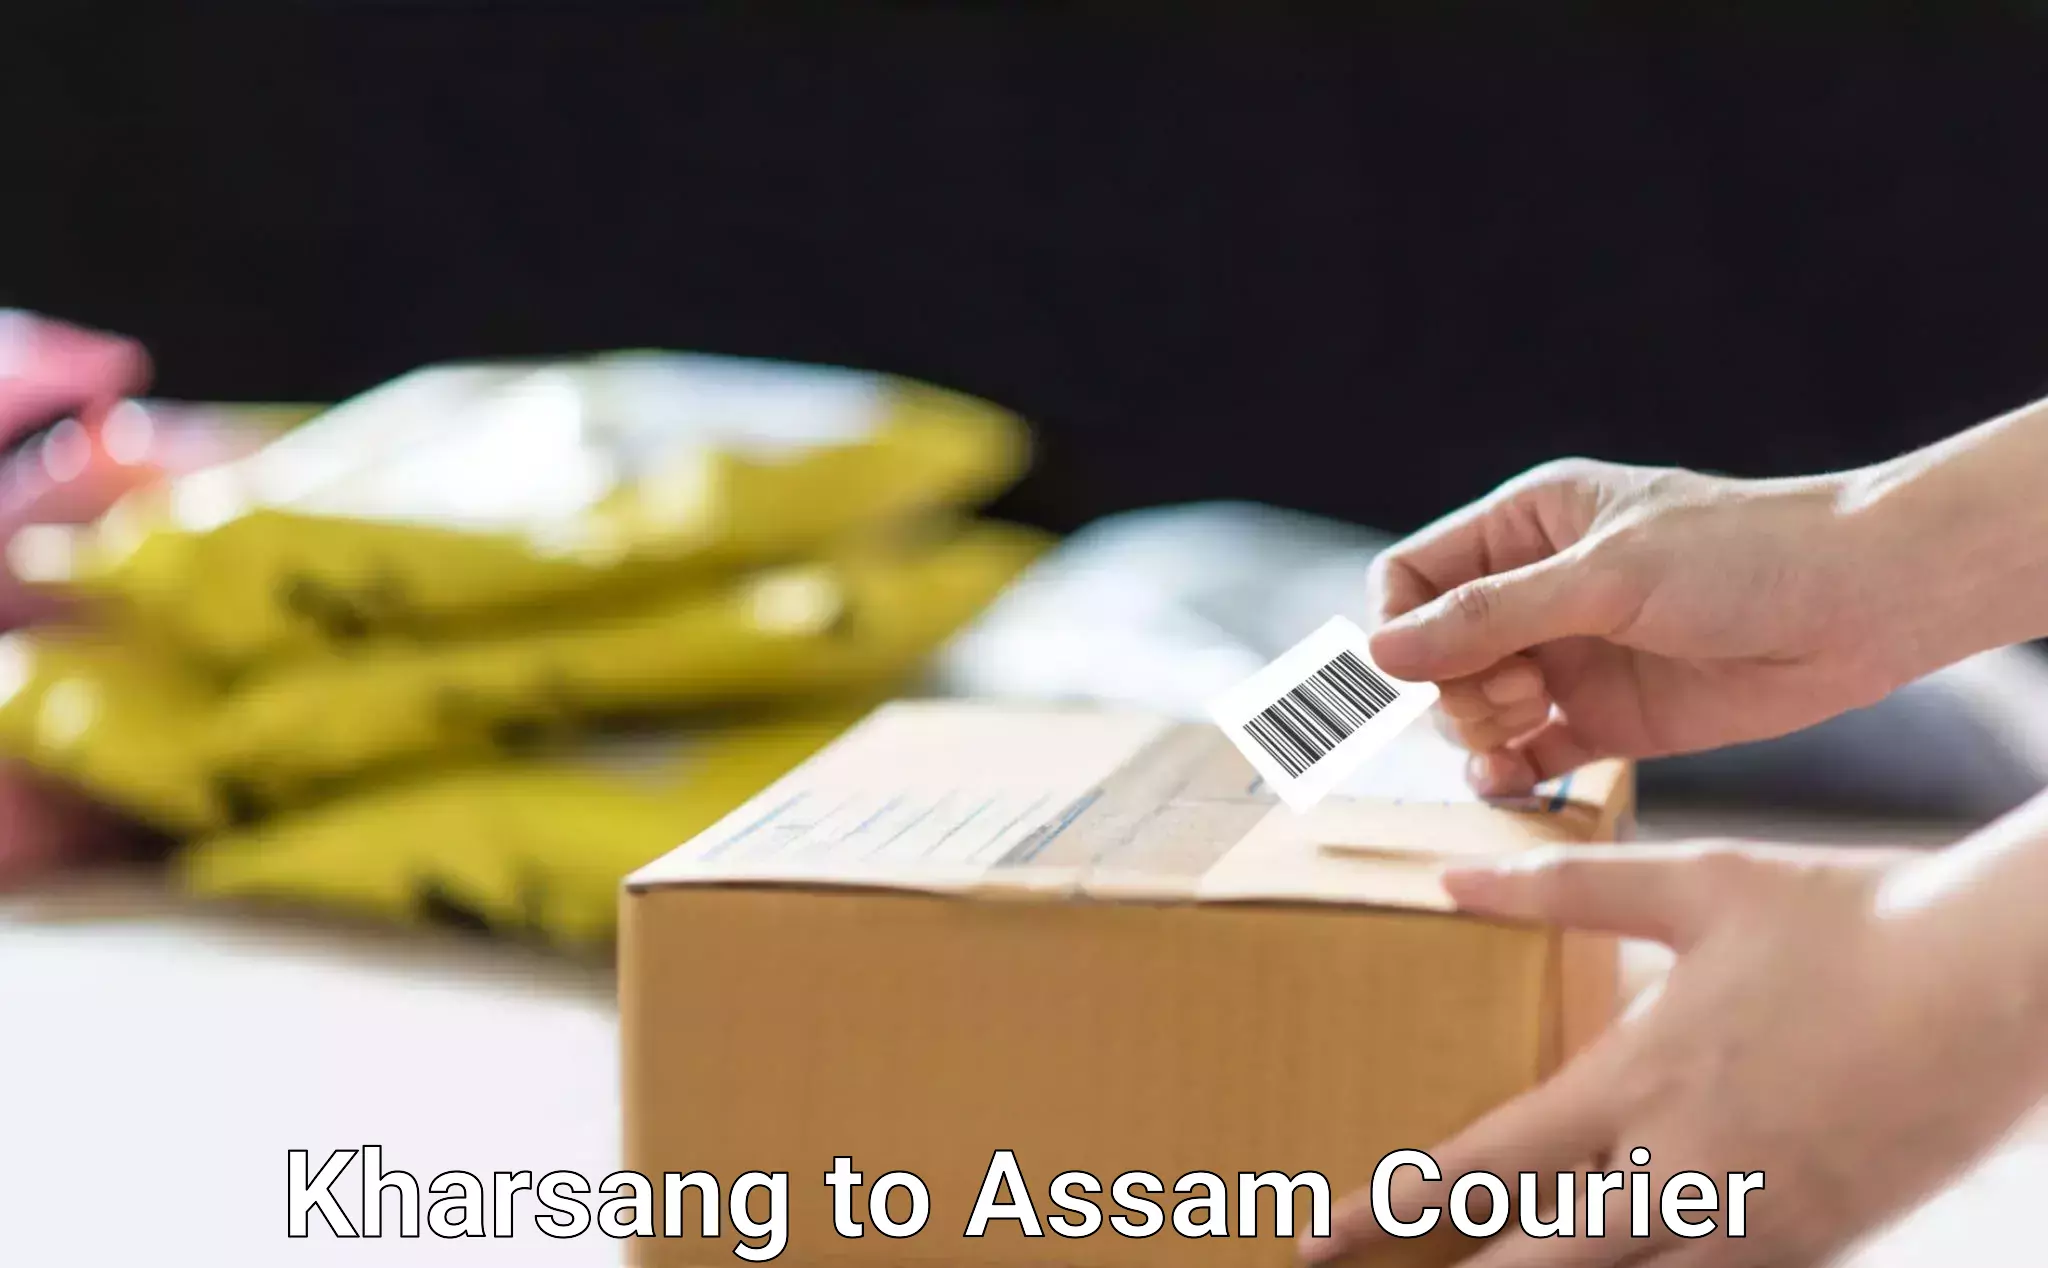 Courier service comparison Kharsang to Assam University Silchar